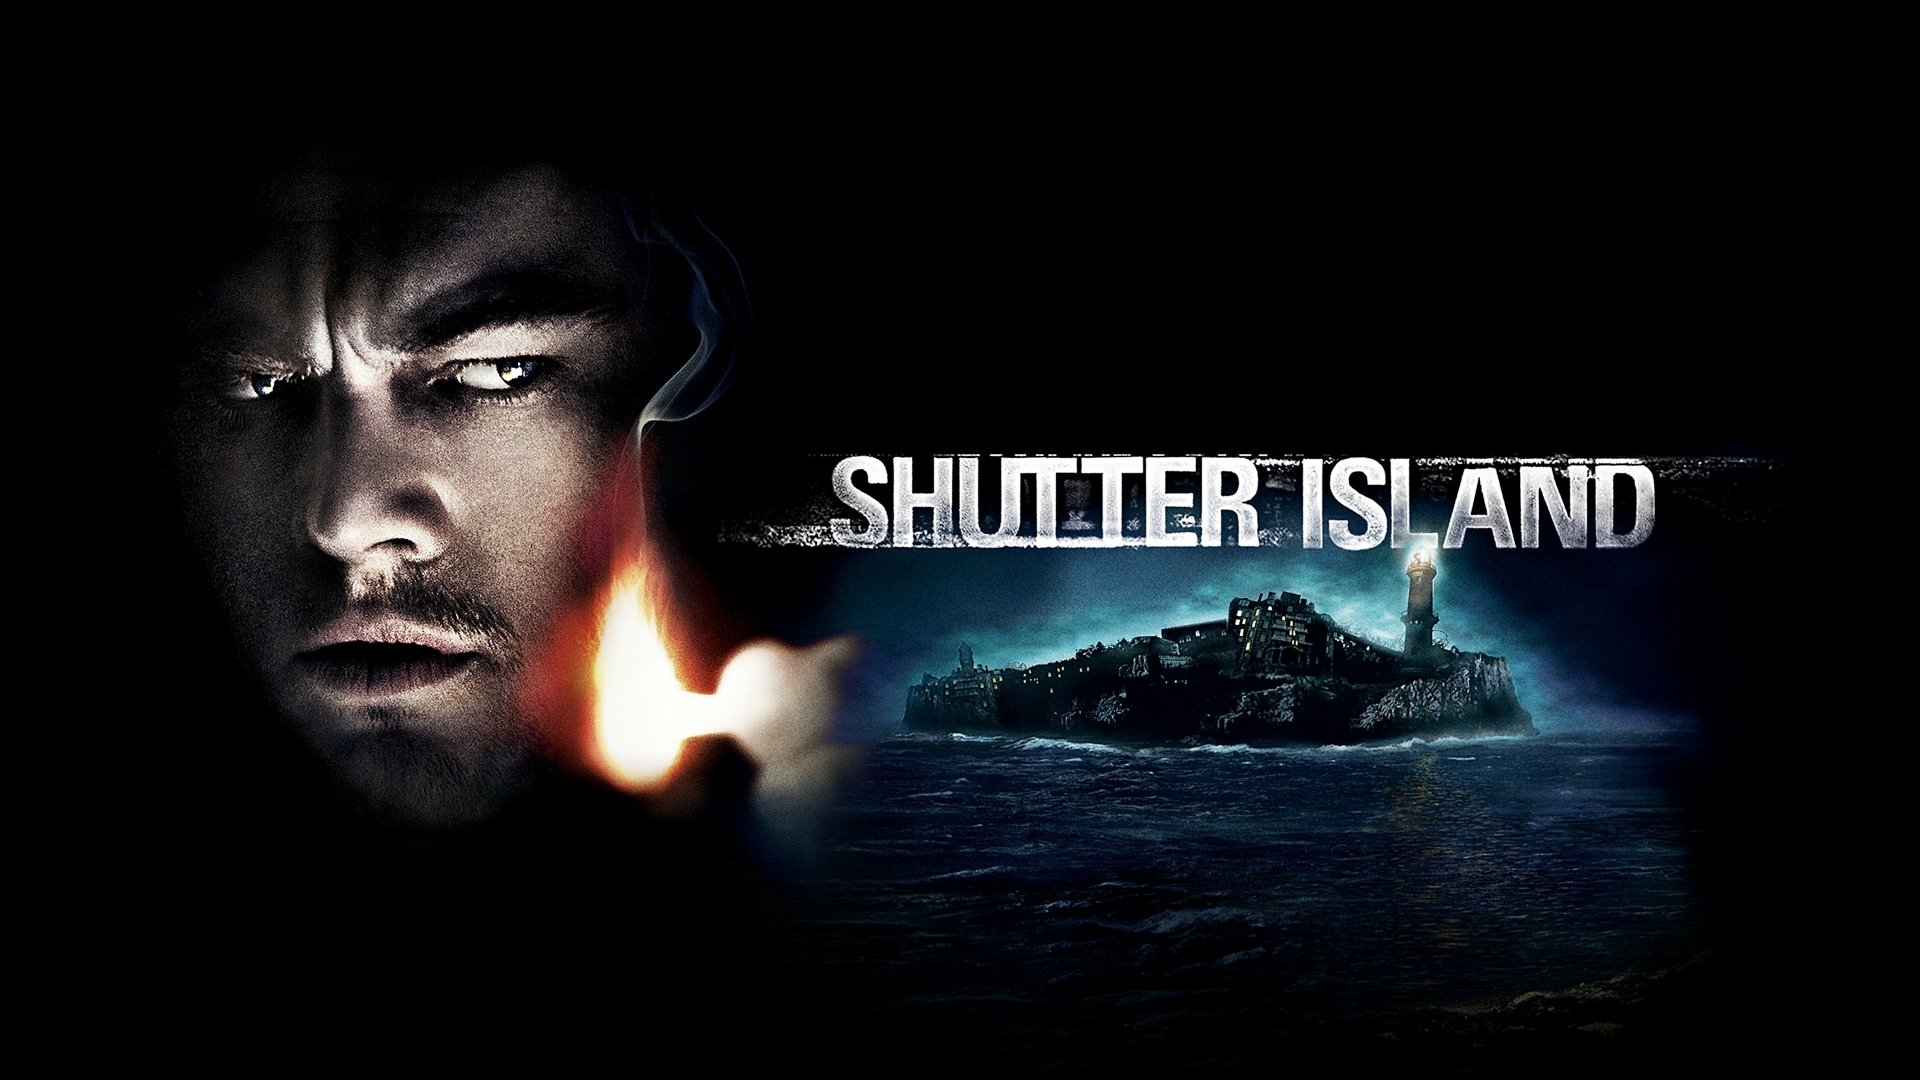 Shutter Island 4k Ultra HD Wallpaper